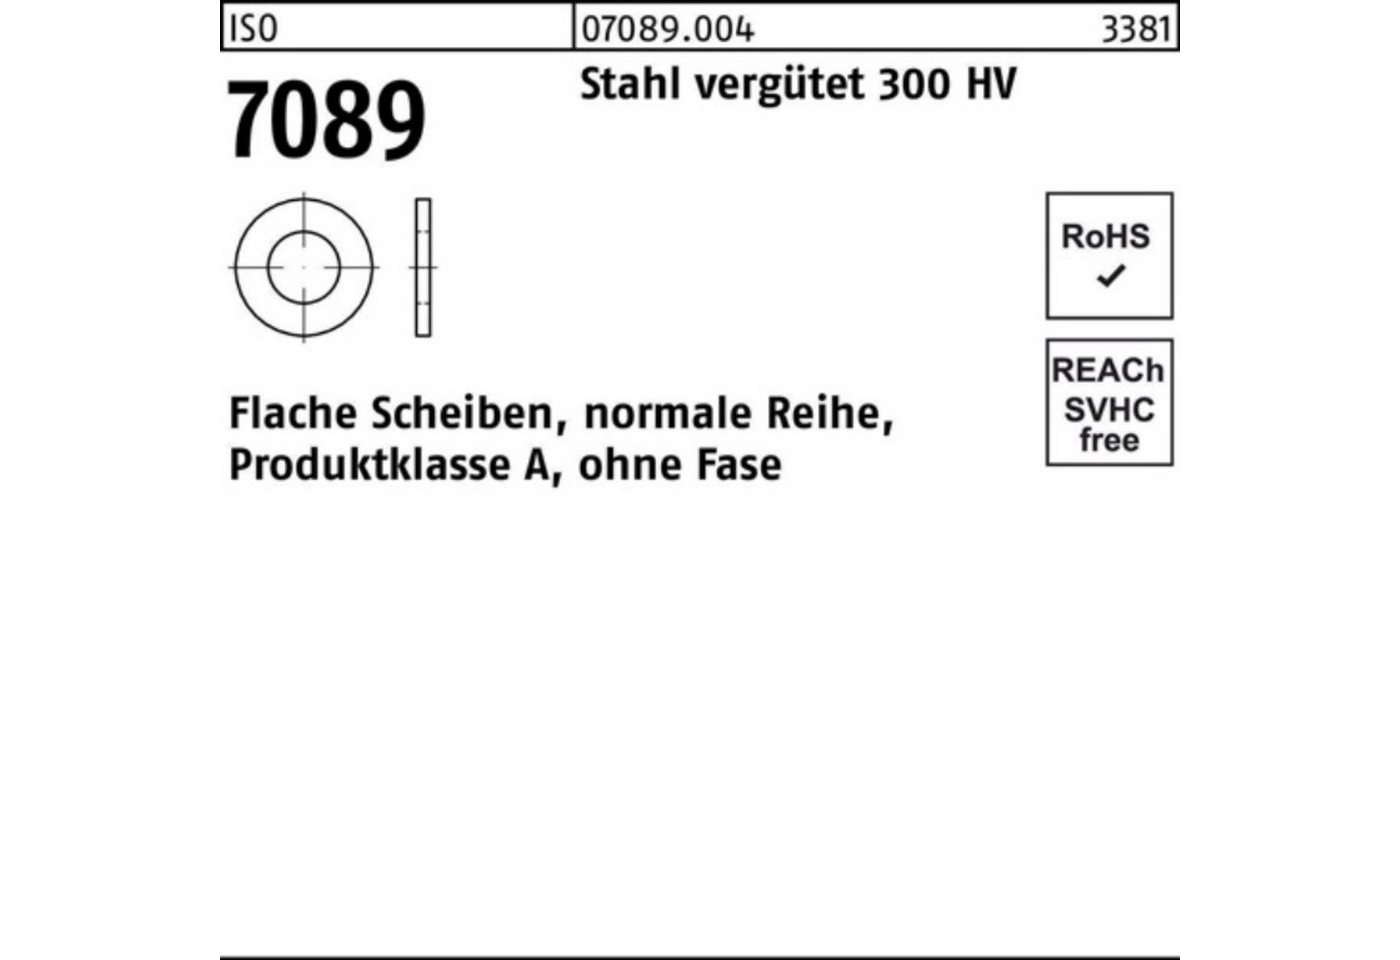 Bufab Unterlegscheibe 200er Pack Unterlegscheibe ISO 7089 o.Fase 4 Stahl vergütet 300 HV 20 von Bufab